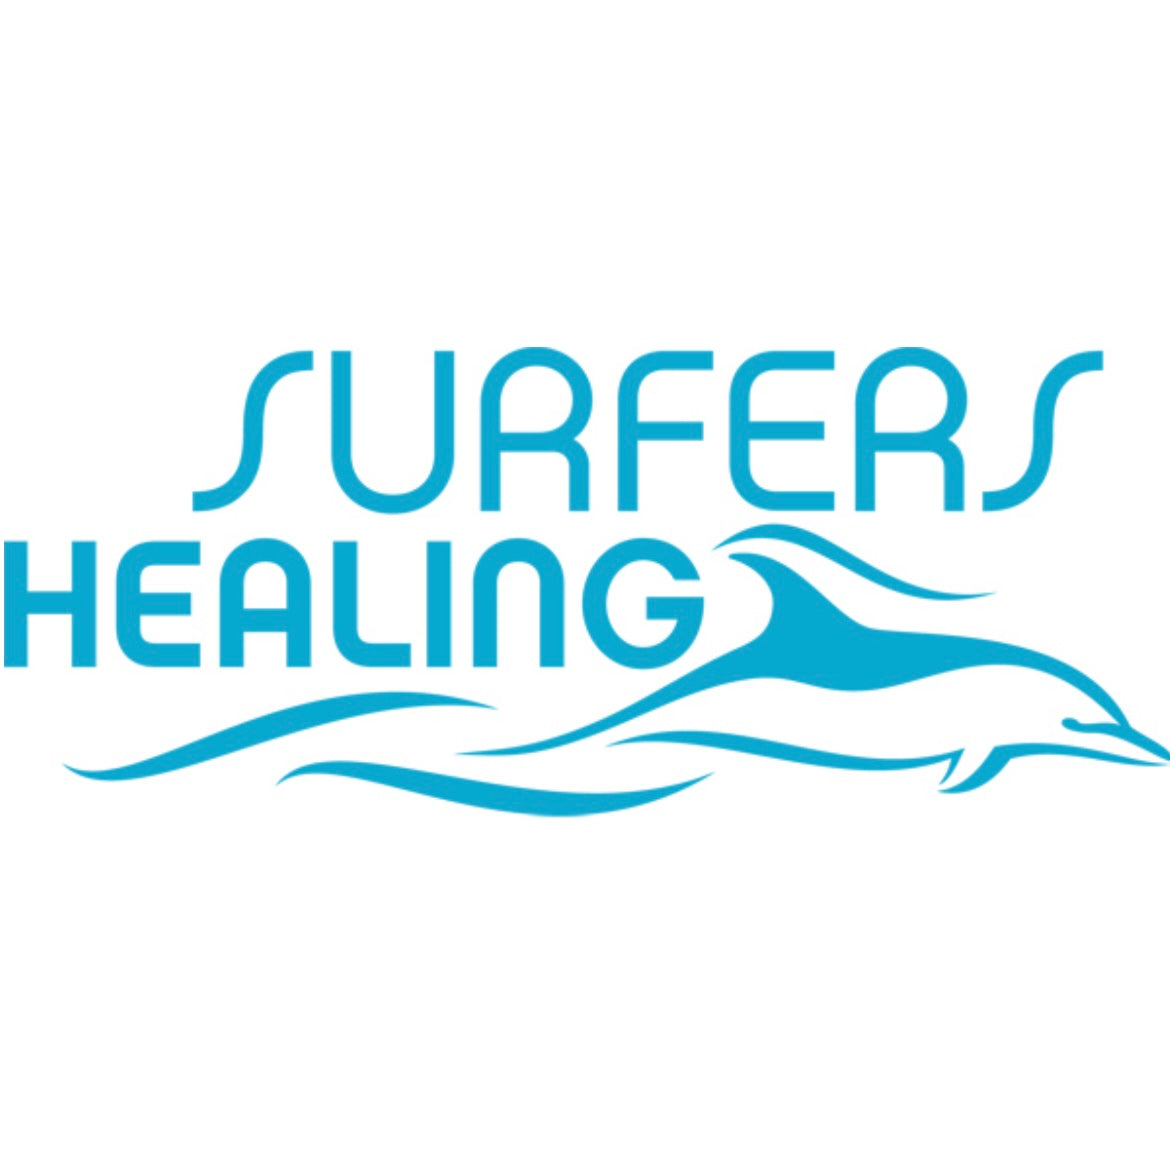 Surfers healing logo. 